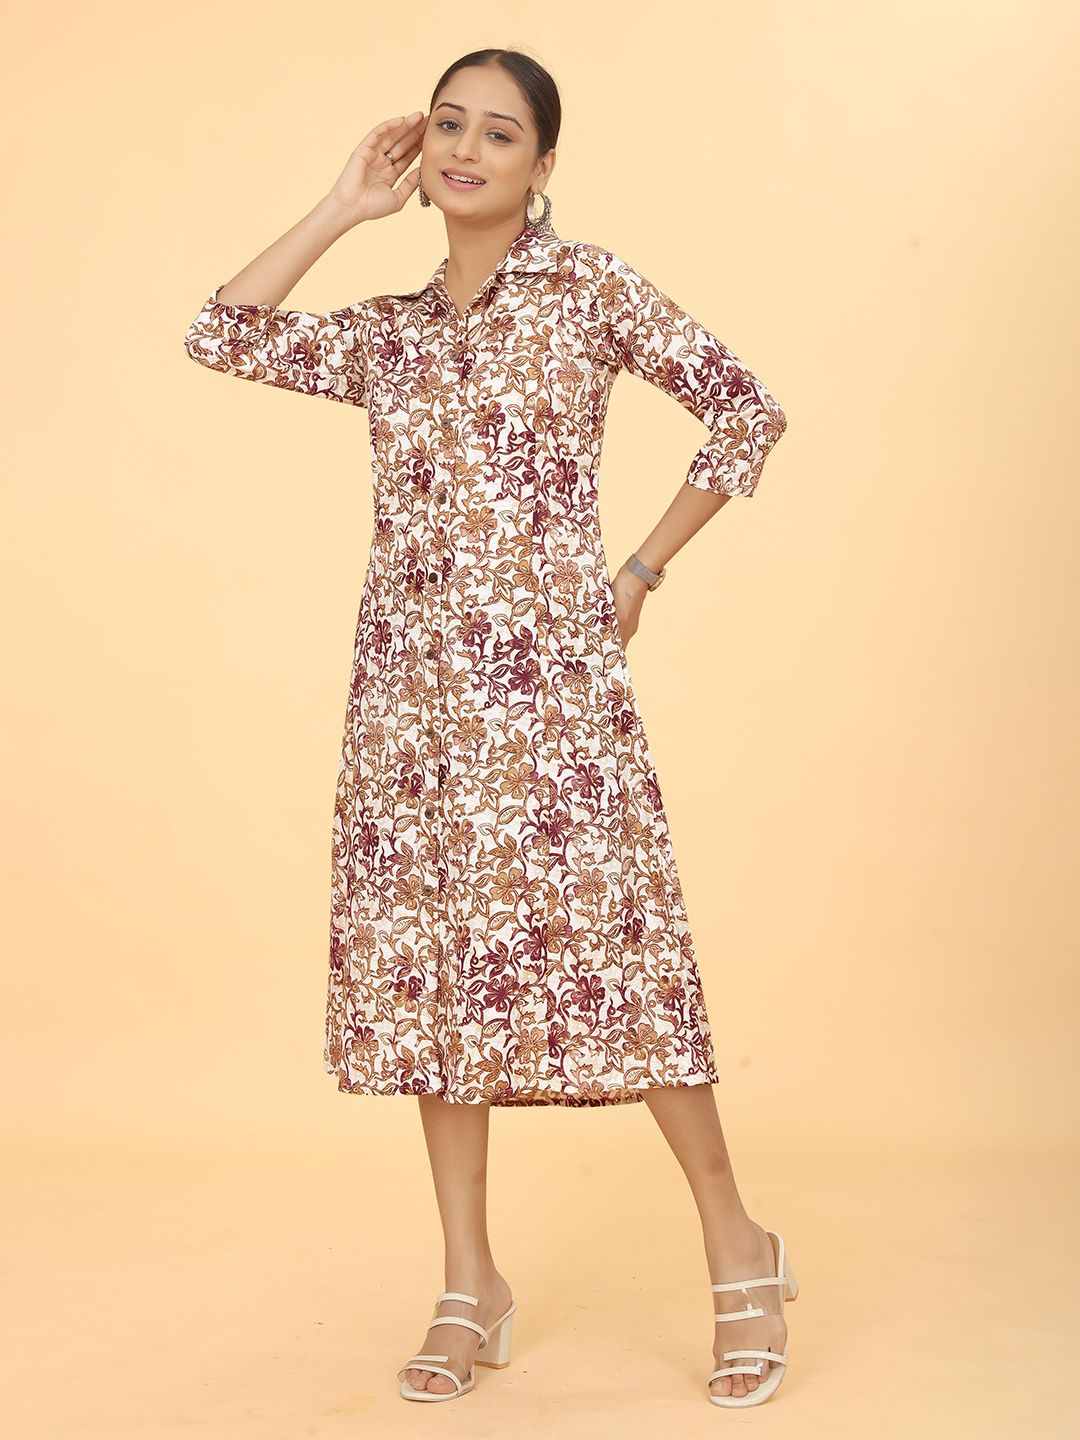 Kesudi White & Brown Floral Print Shirt Midi Dress Price in India